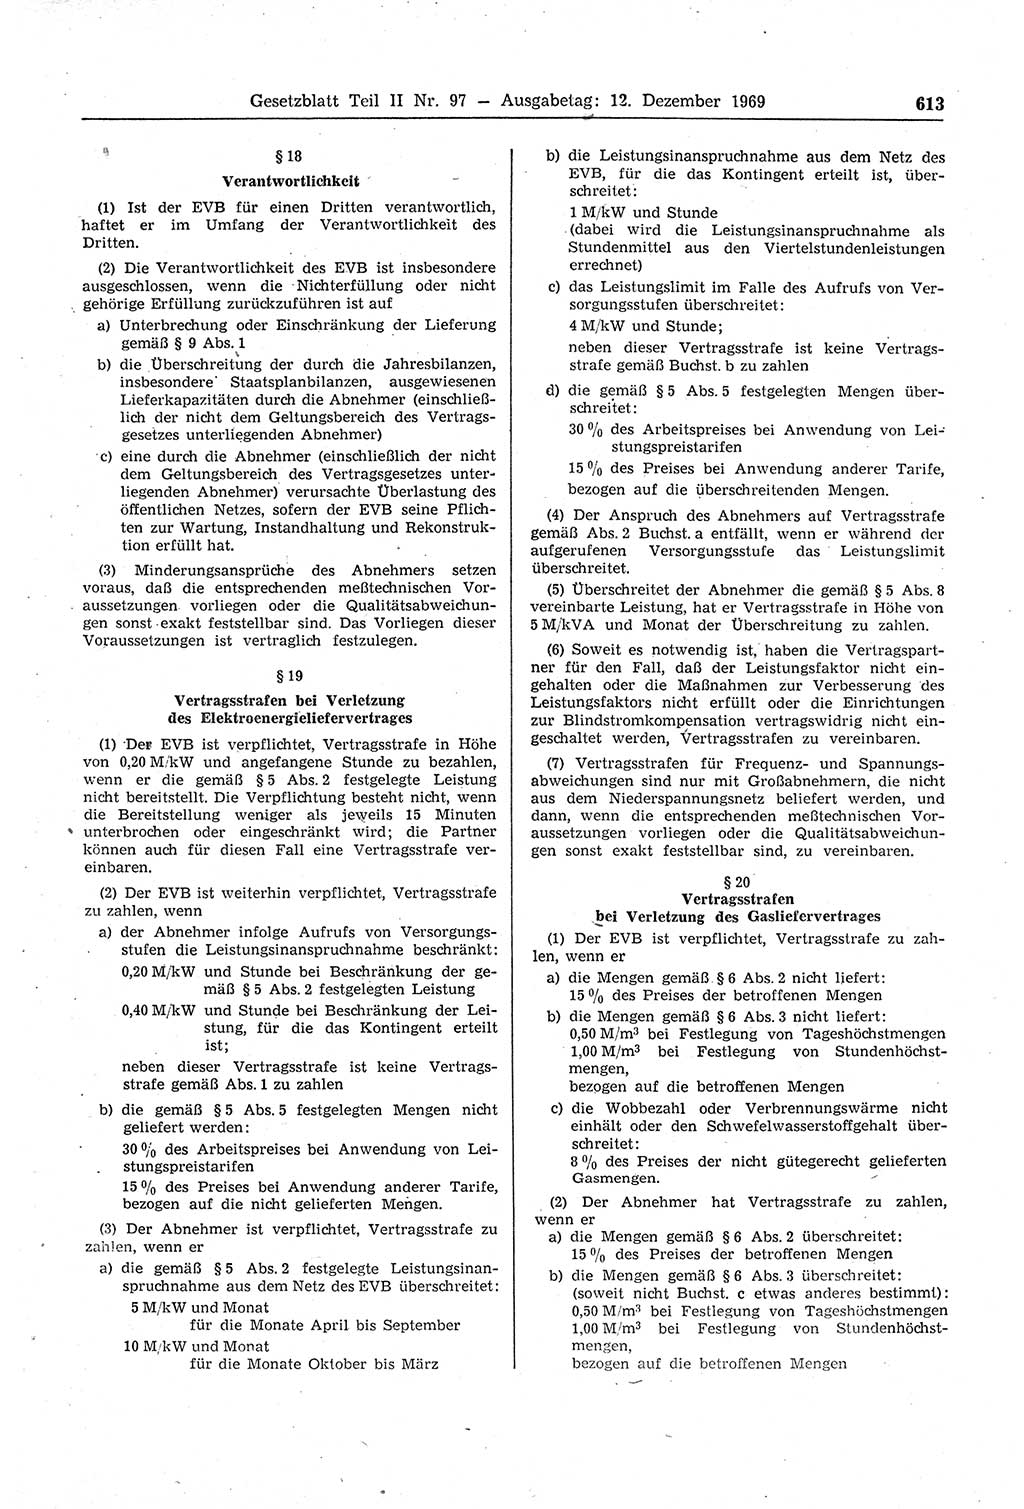 Gesetzblatt (GBl.) der Deutschen Demokratischen Republik (DDR) Teil ⅠⅠ 1969, Seite 613 (GBl. DDR ⅠⅠ 1969, S. 613)